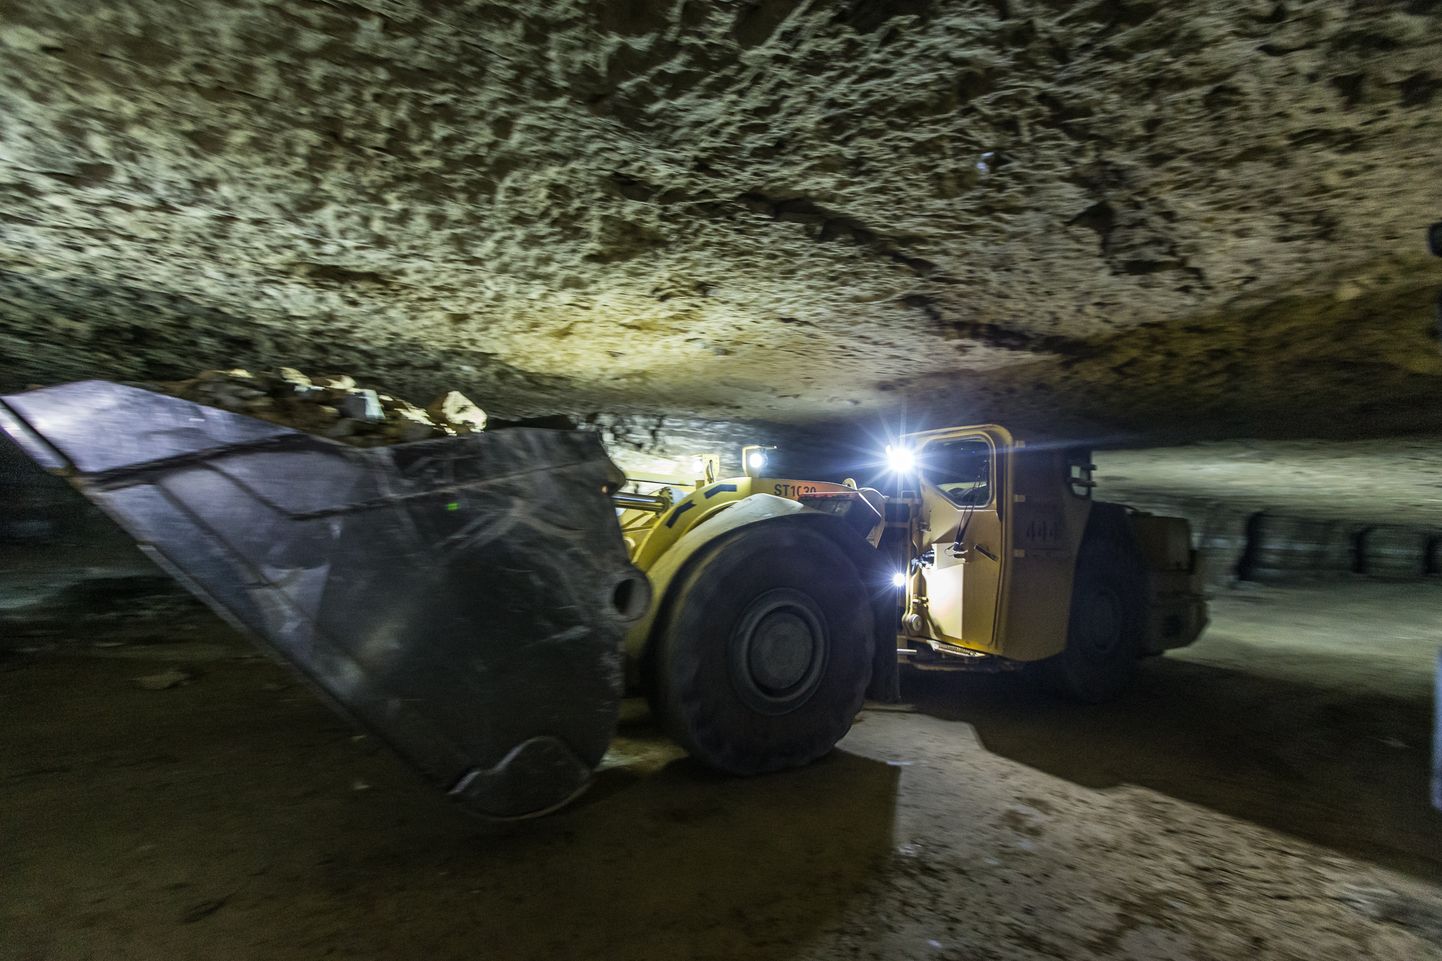 Подземные ходы шахты "Эстония" протягиваются на десятки километров. По какой-то причине работники шахты там прятали, как утверждается, не взятые на учет запасные части, рабочие инструменты и прочее имущество стоимостью десятки тысяч евро.